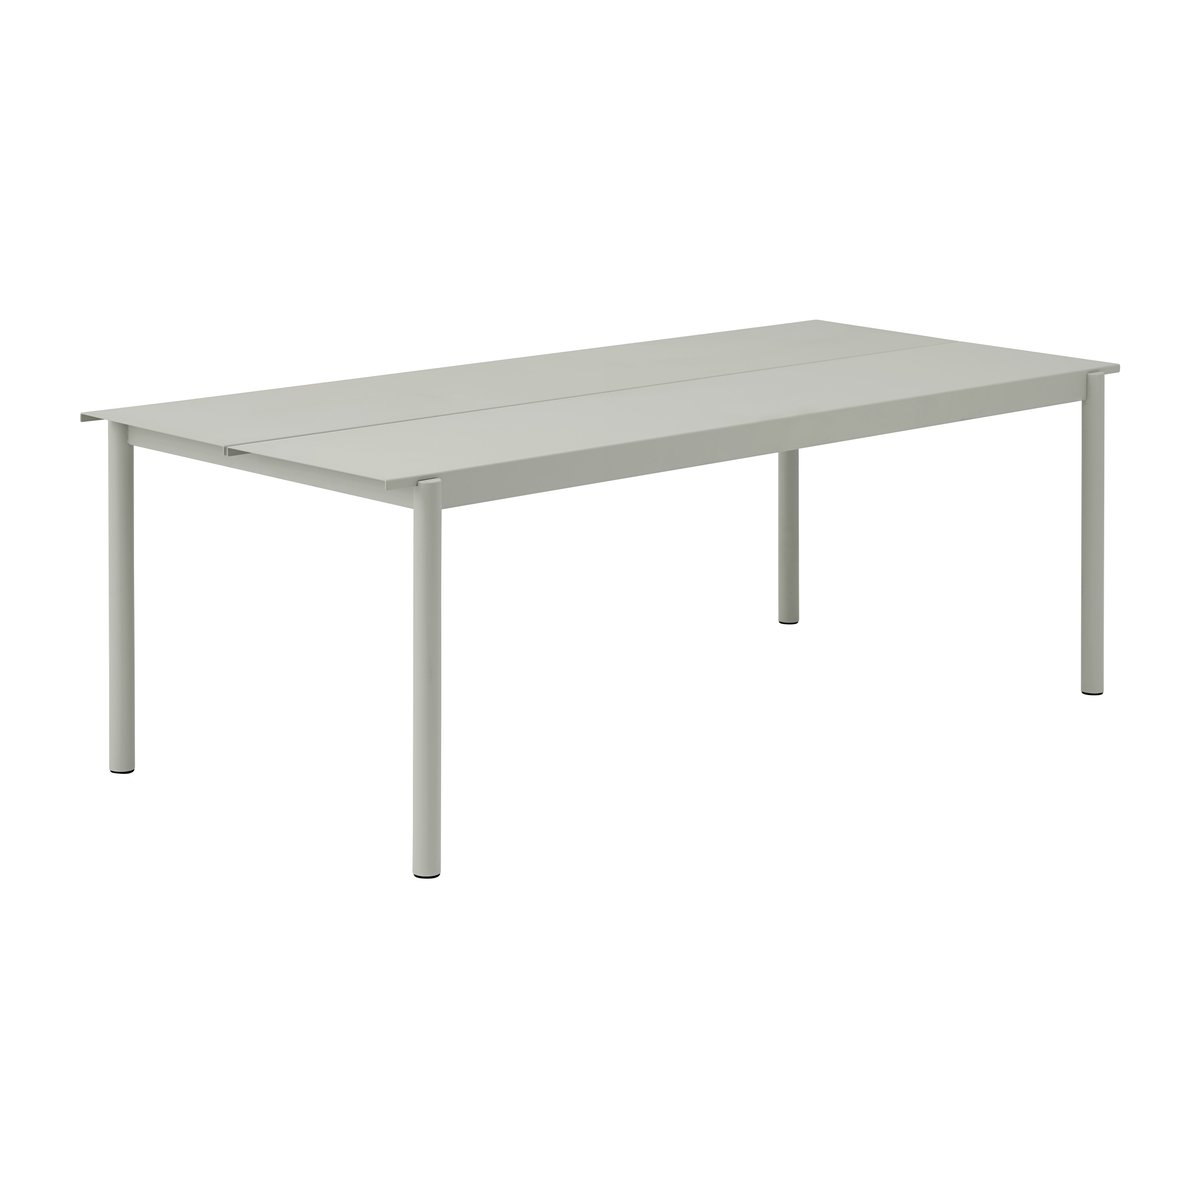 Muuto Linear steel table pöytä 220 x 90 cm Grey (RAL 7044)